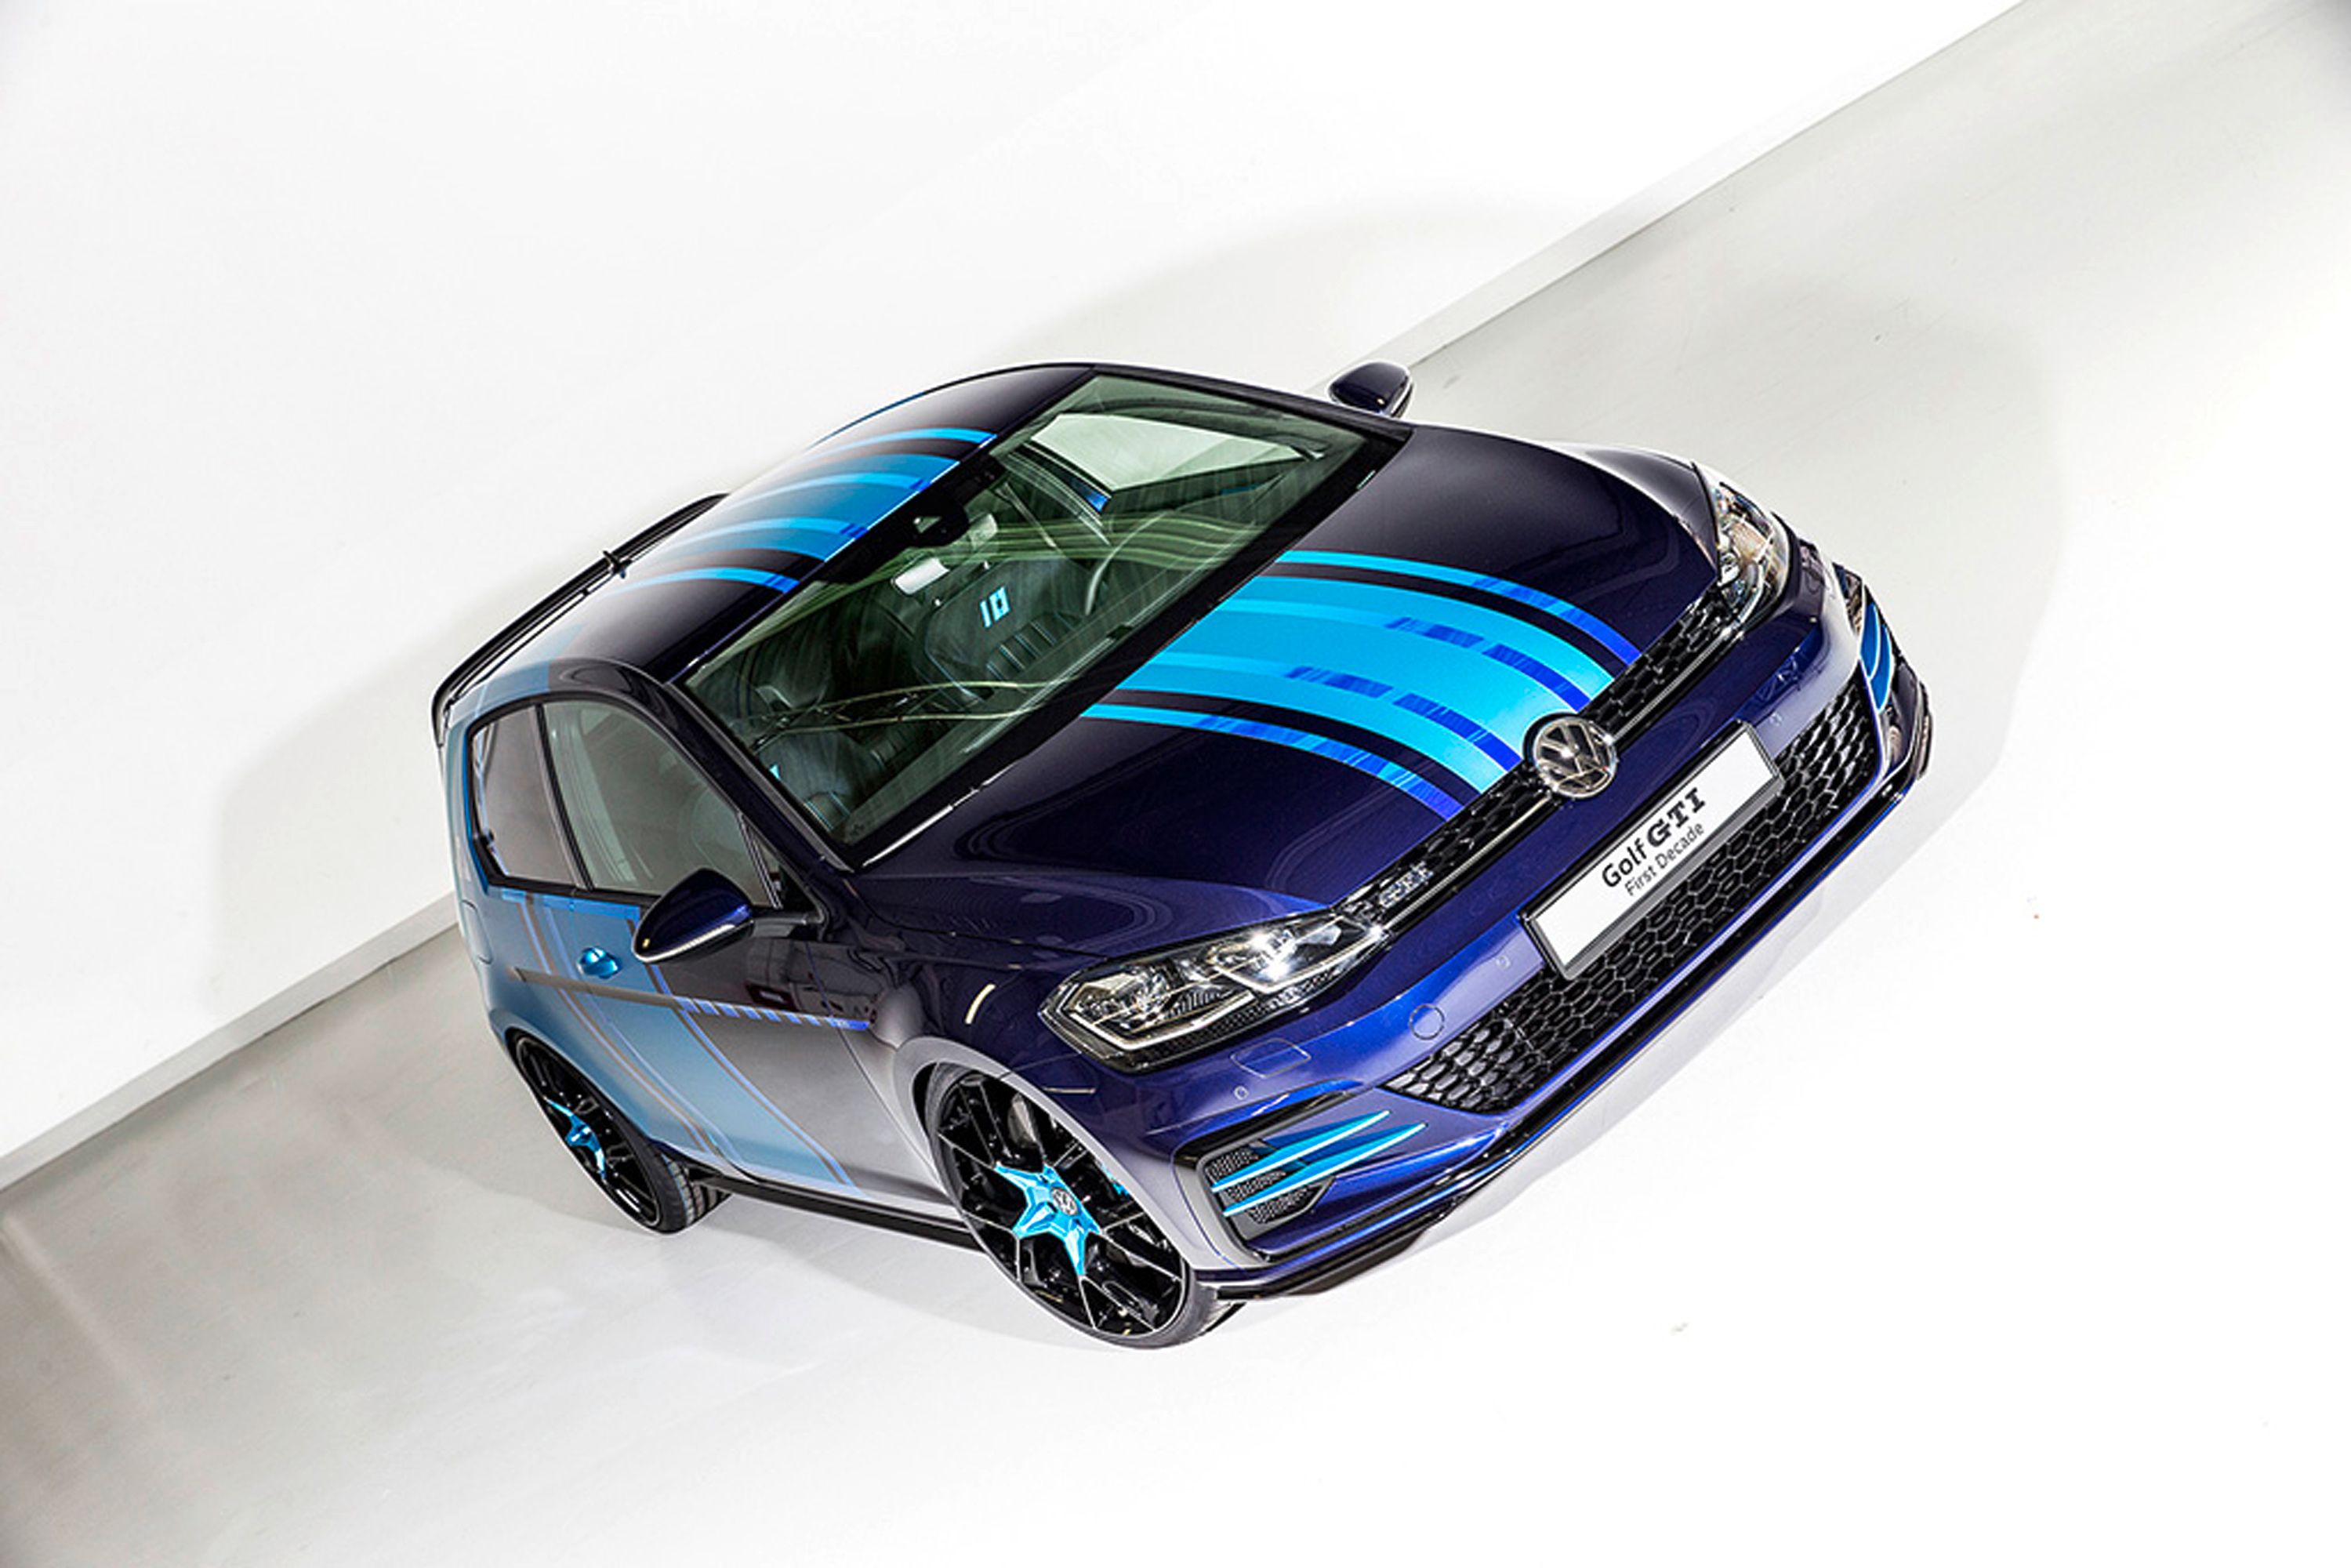 2017 Volkswagen Golf GTI First Decade